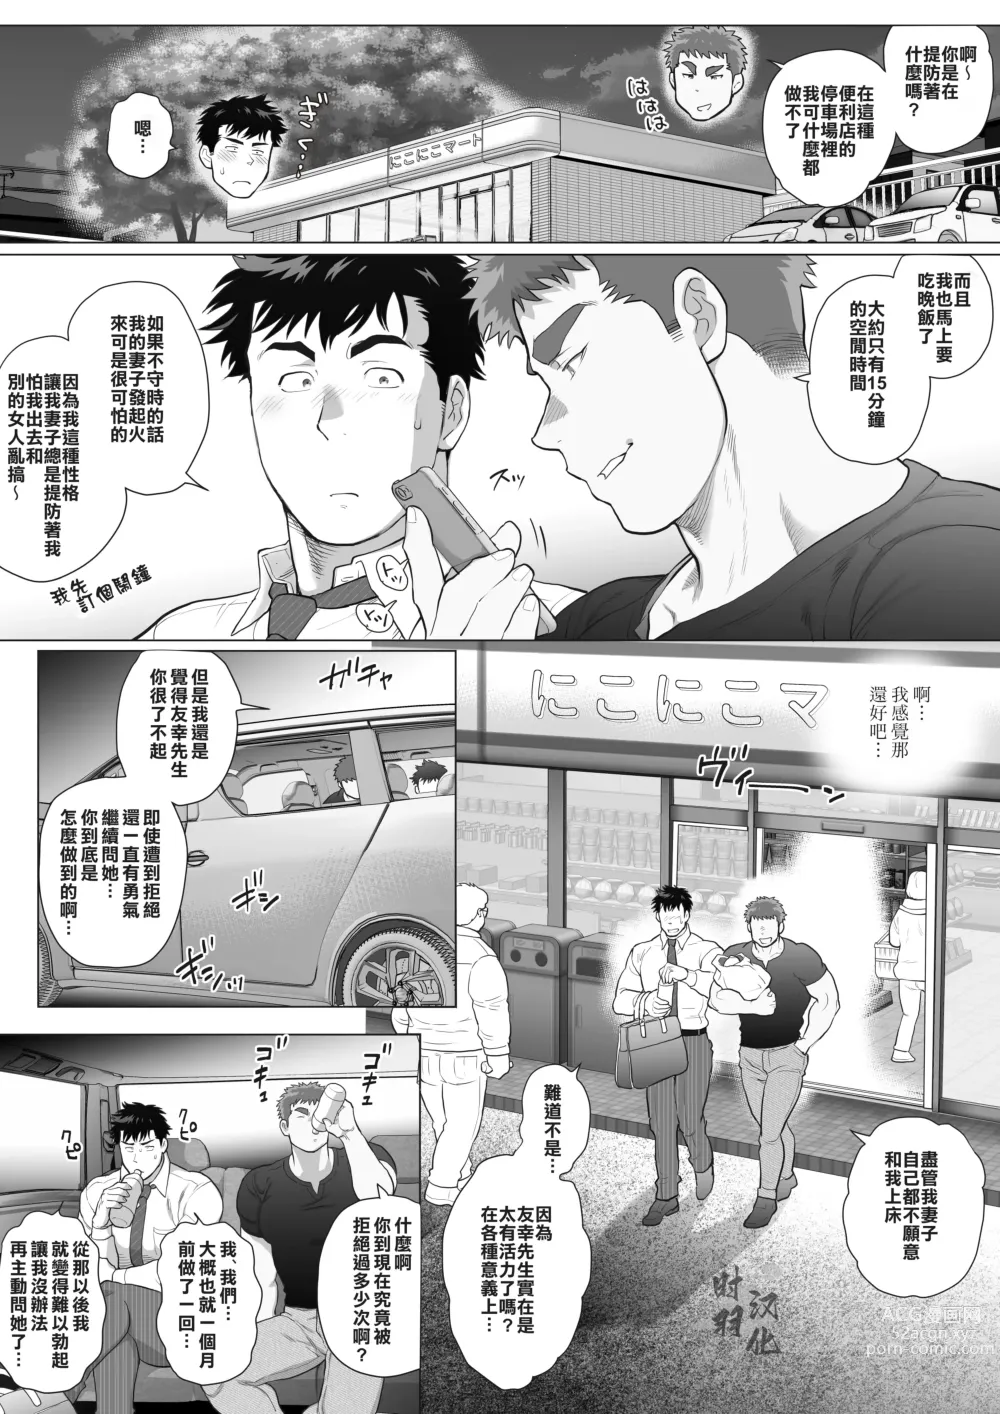 Page 10 of manga 直人爸爸与友幸爸爸 第三话